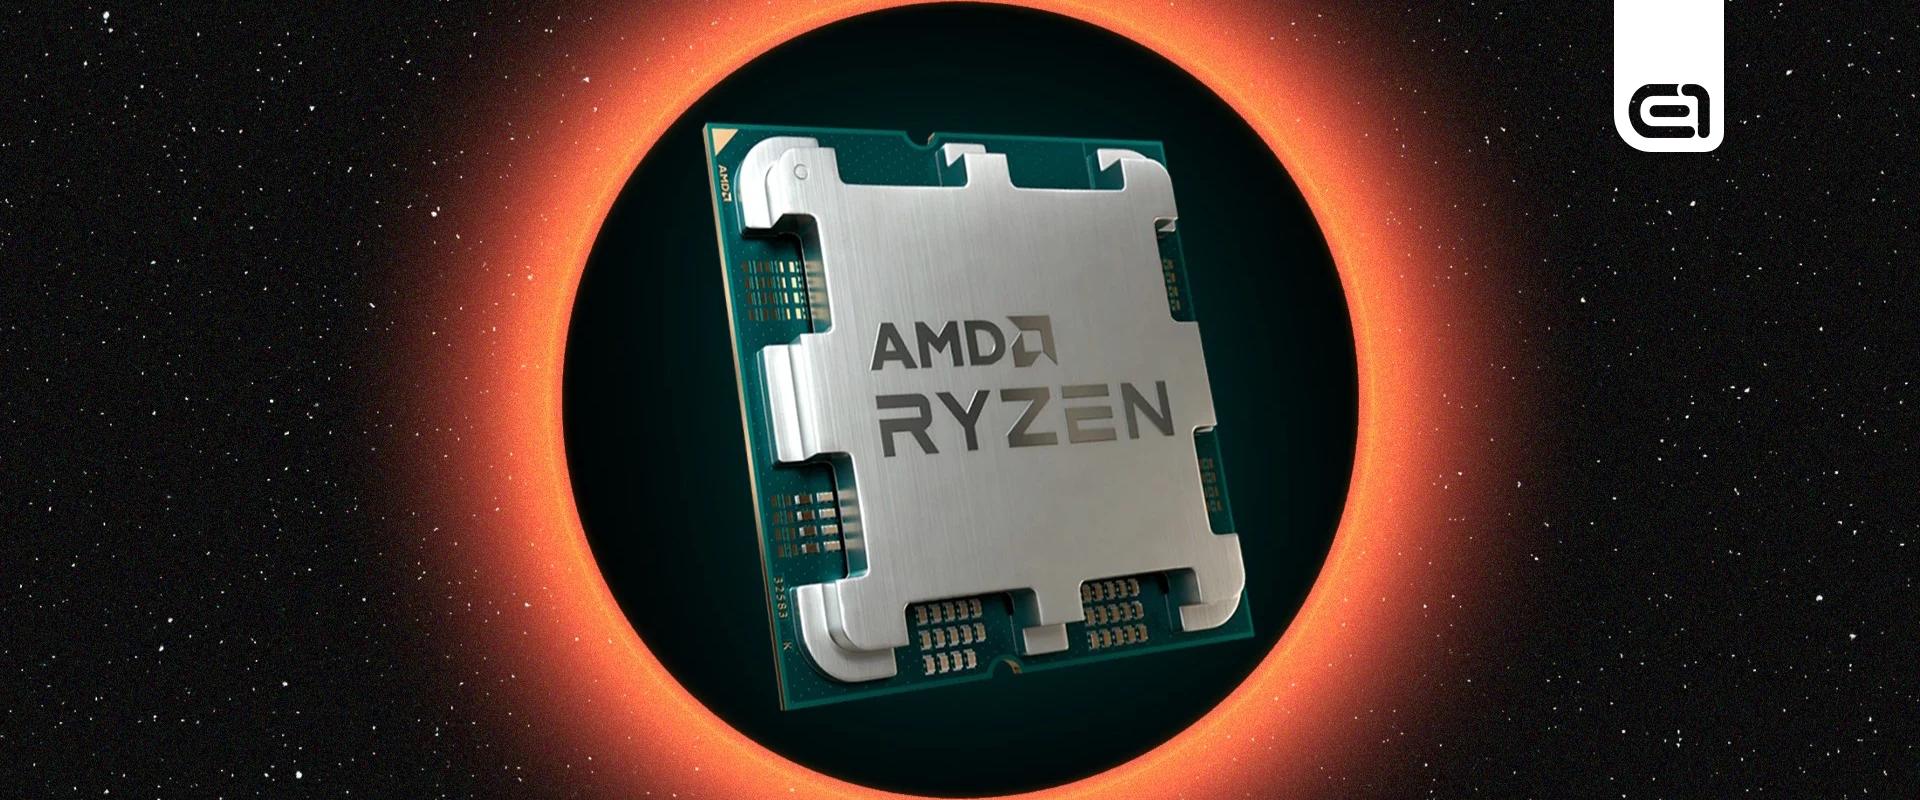 Az új AMD processzor gyorsabb, mint az i9-13900K